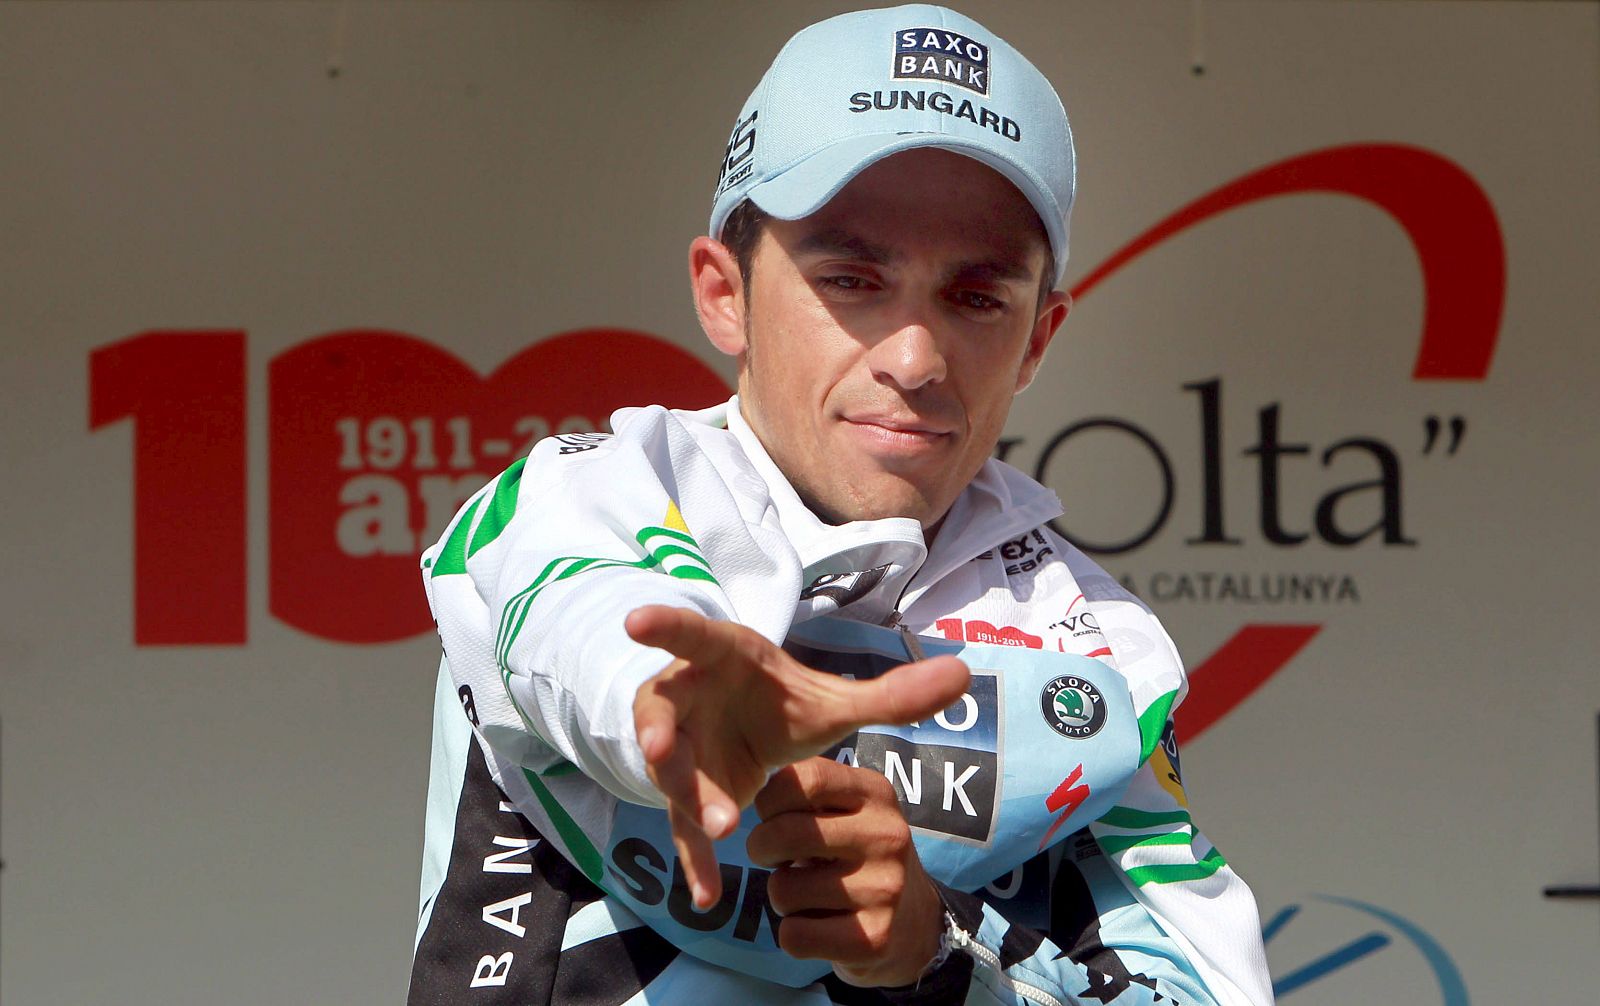 El caso de Alberto Contador podría resolverse antes del 2 de julio.